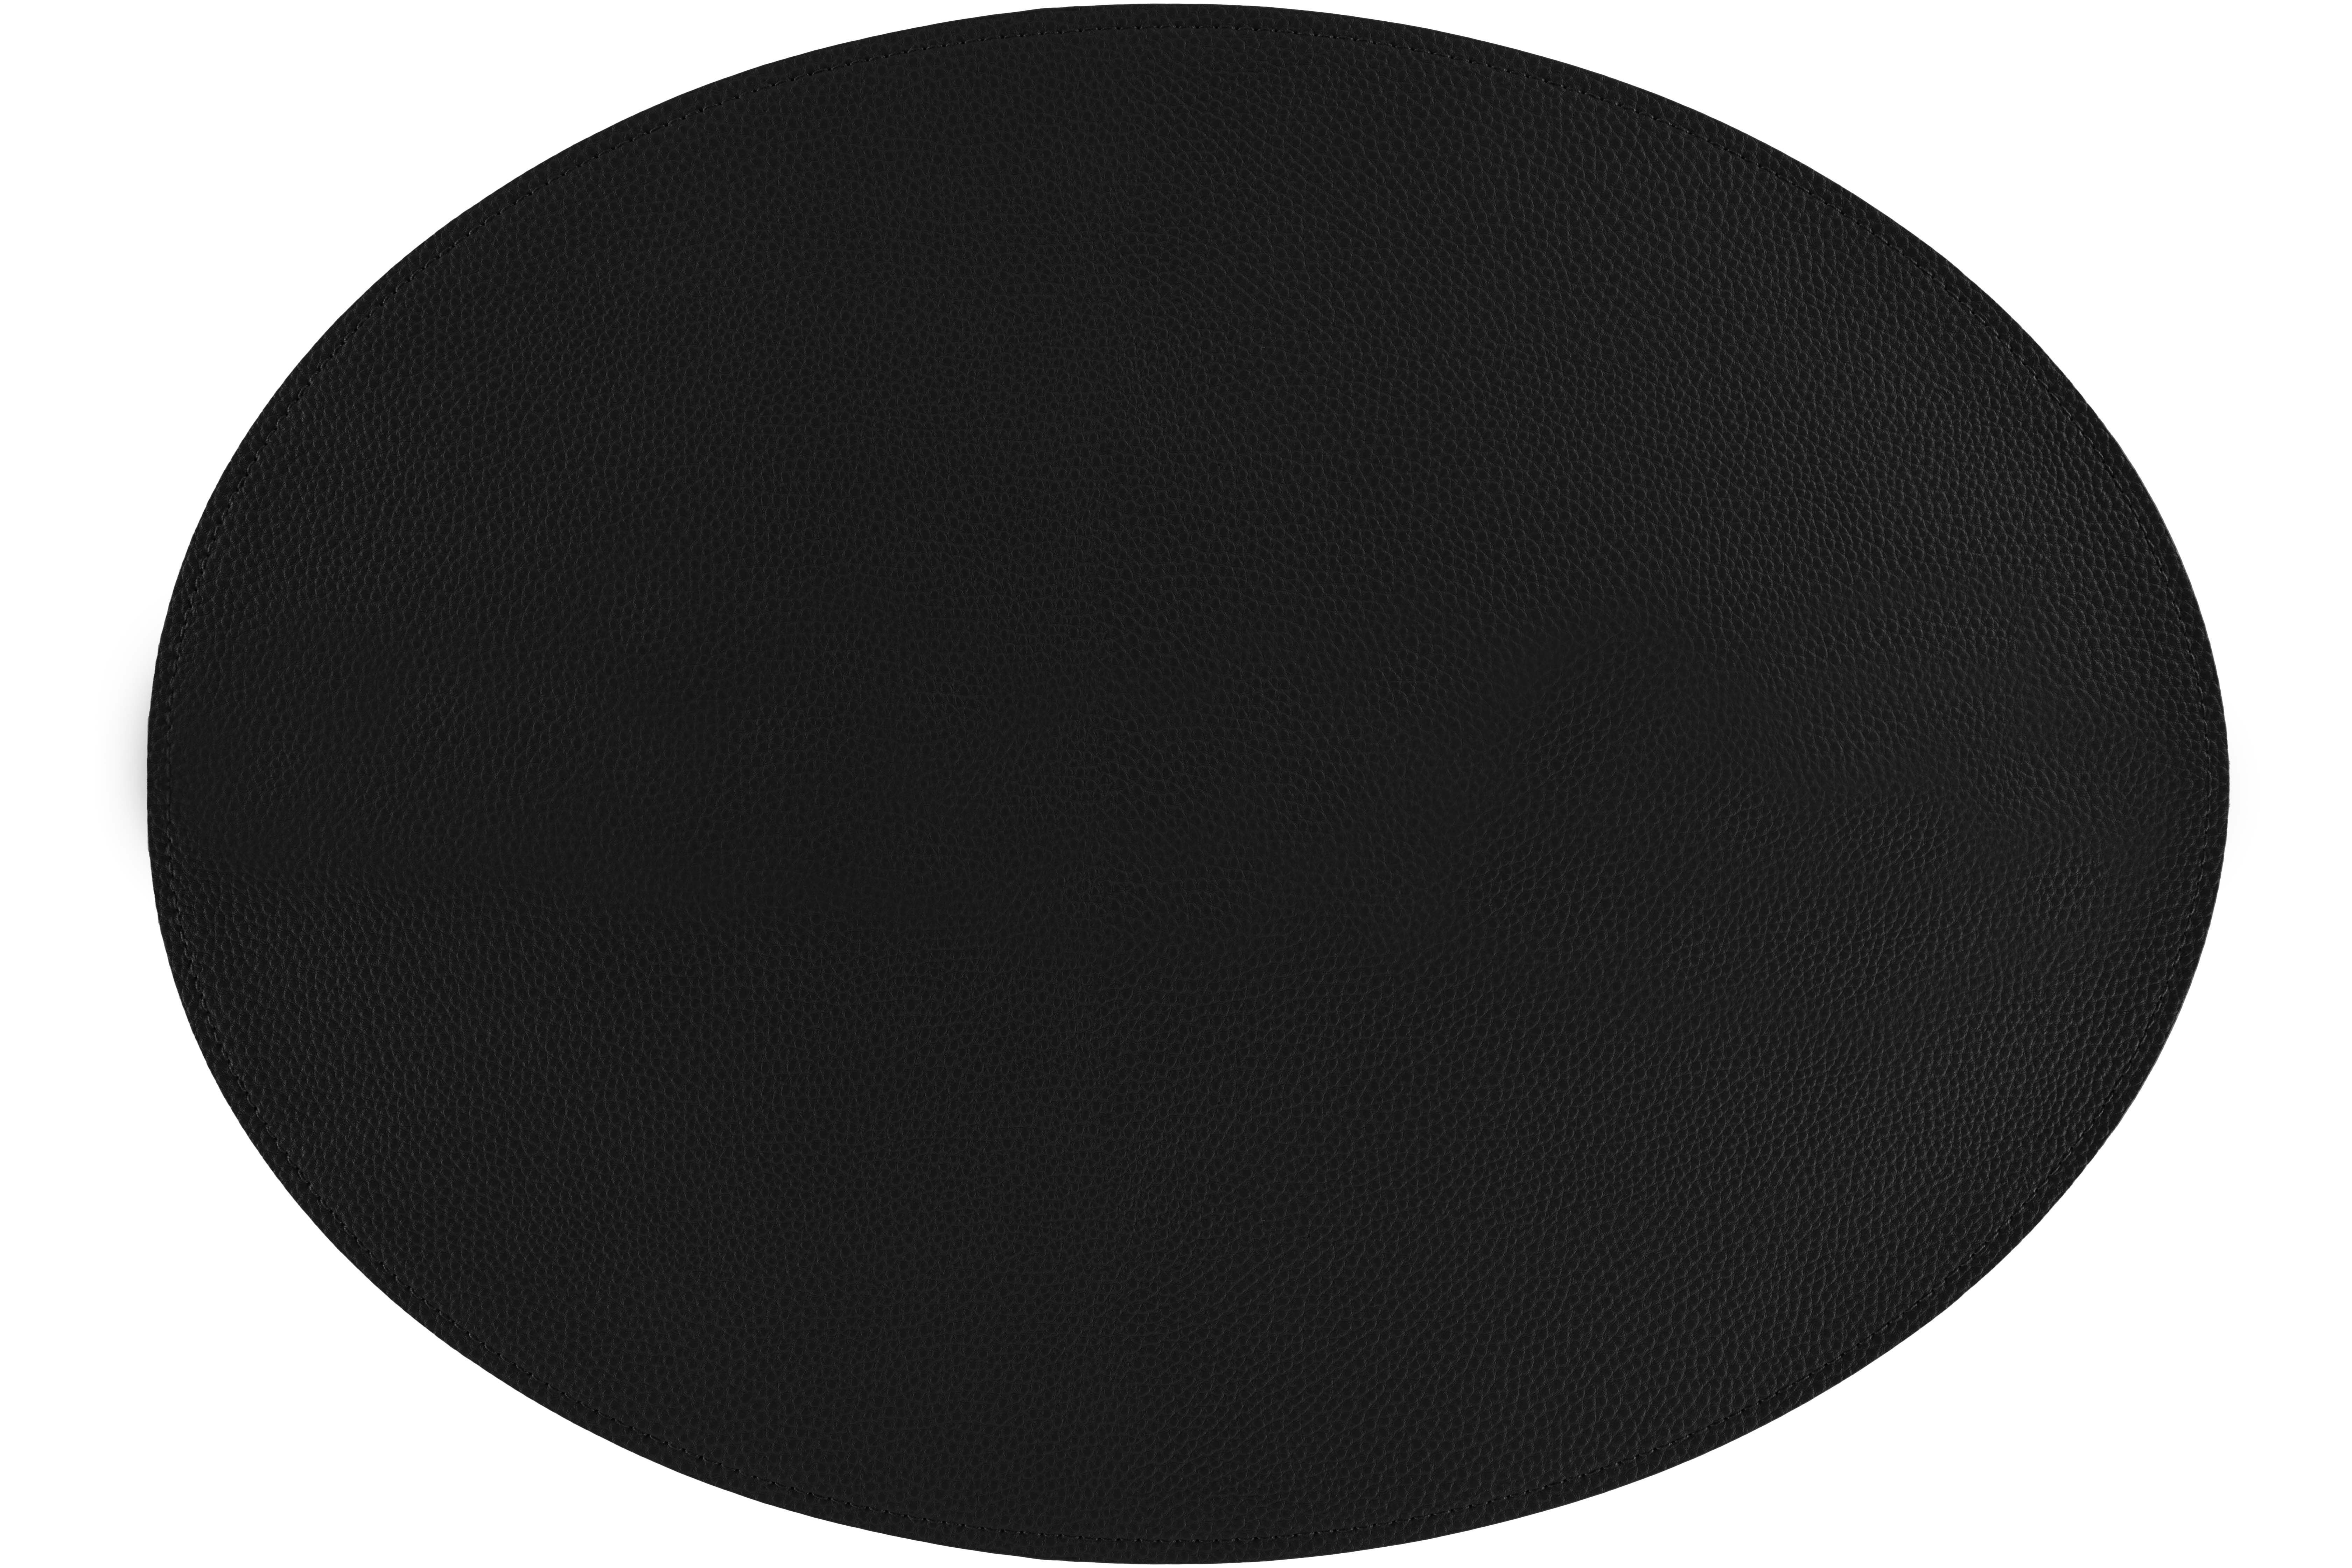 Placemat Trudo oval, 33x45cm, black